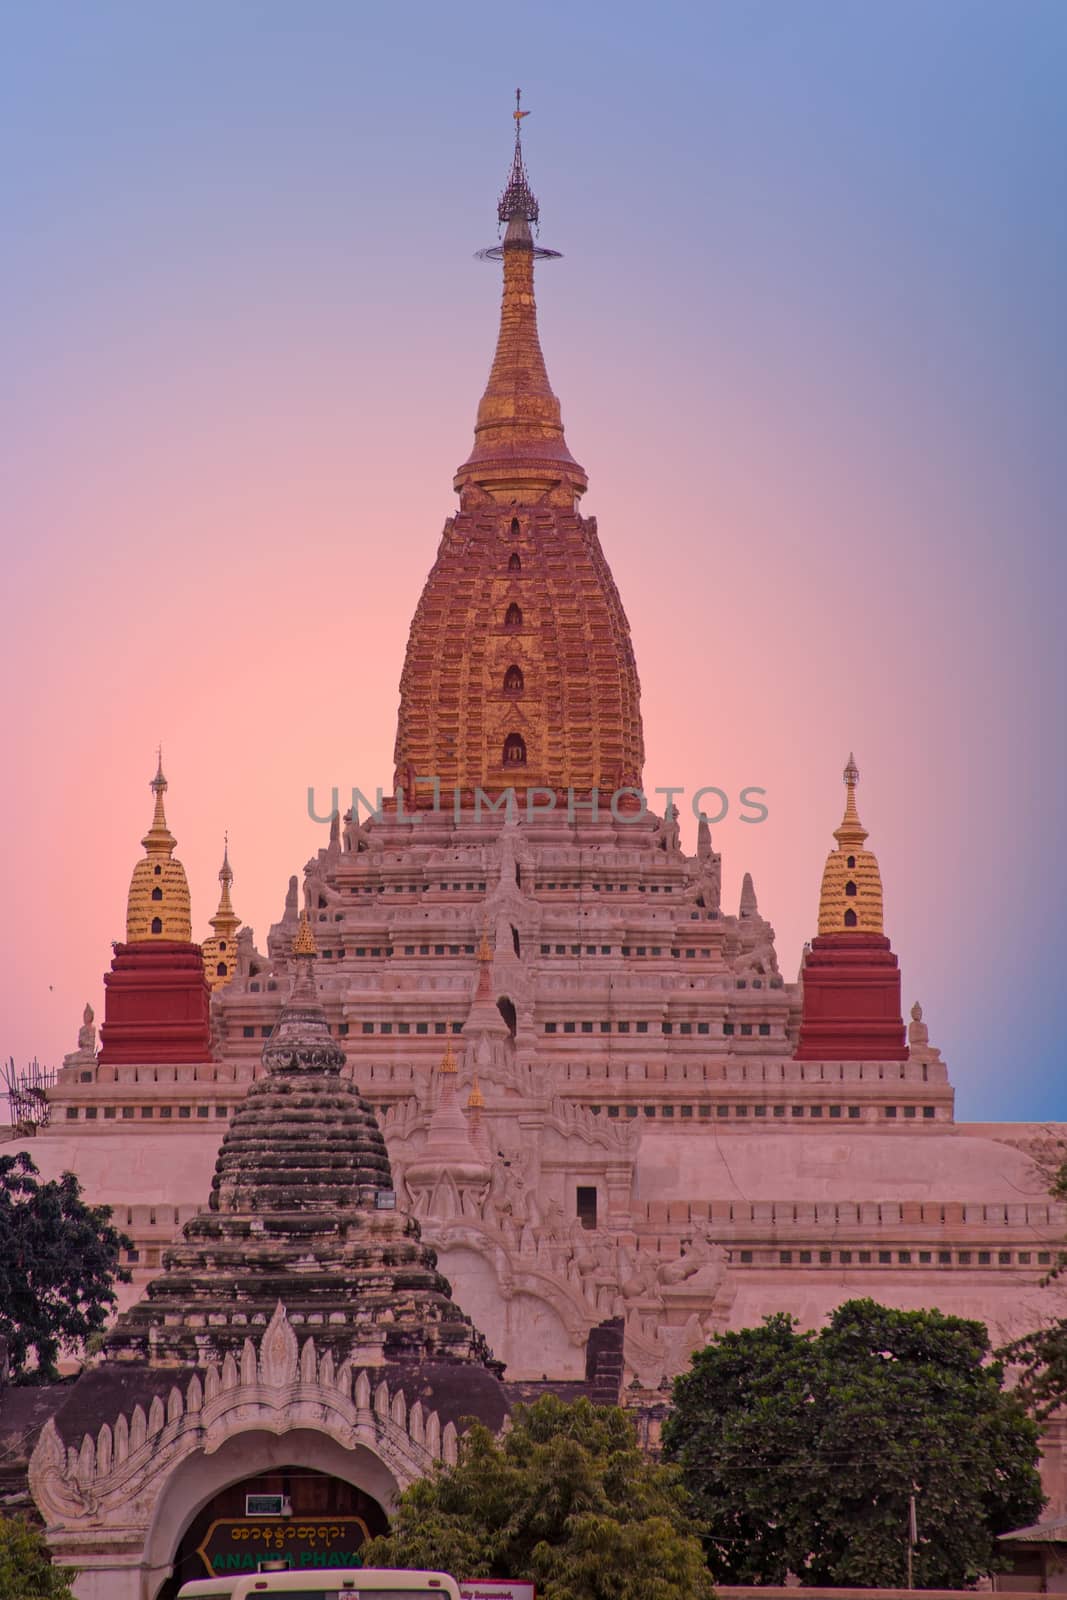 Ananda temple in Bagan, Myanmar at sunset